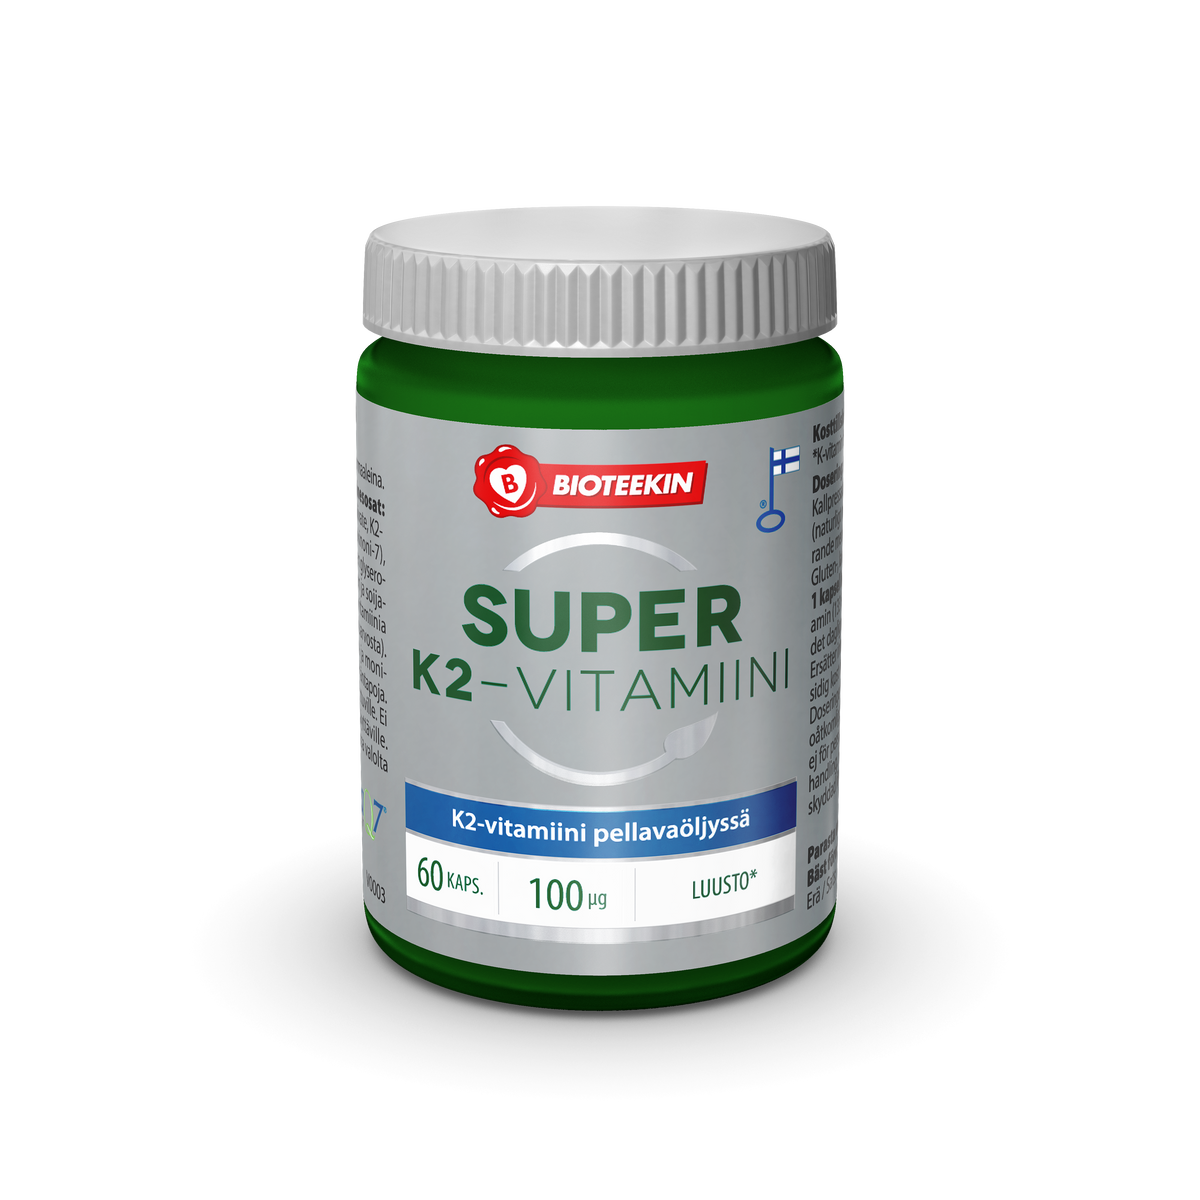 Bioteekin Super K2-vitamiini 60 kaps.